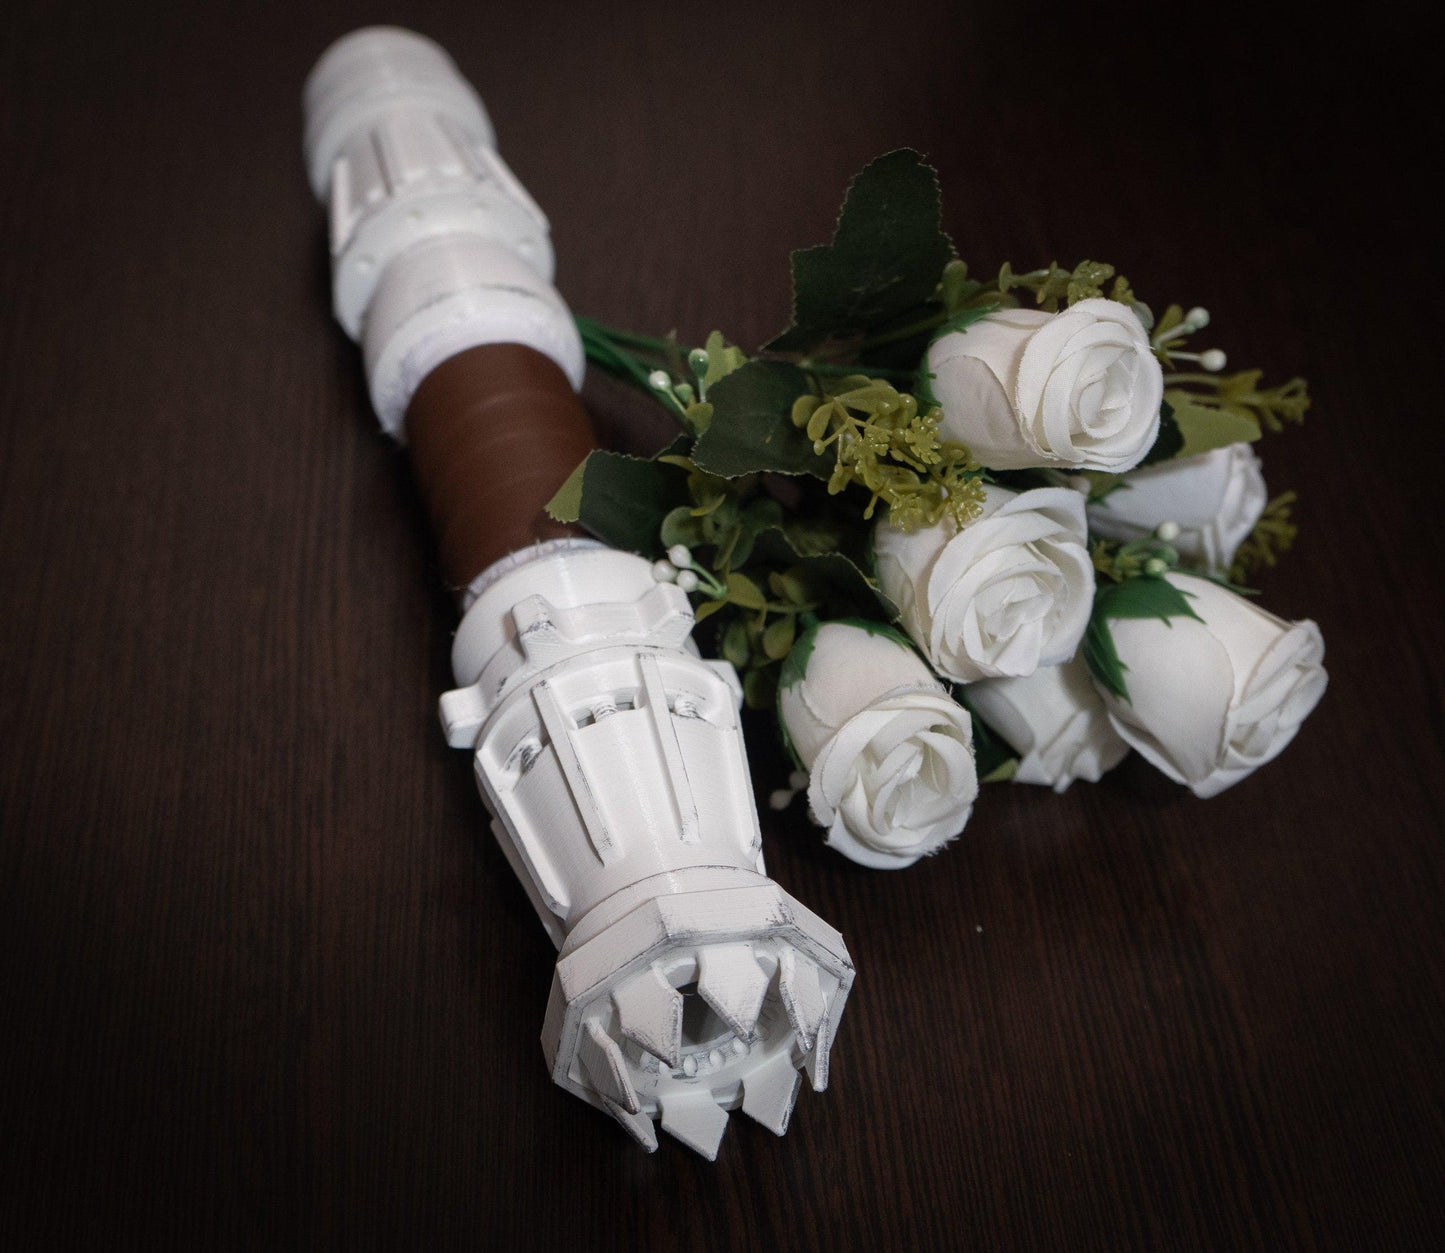 Star Wars Wedding white Rey Lightsaber Bouquet Holder  | star wars wedding - 3DPrintProps